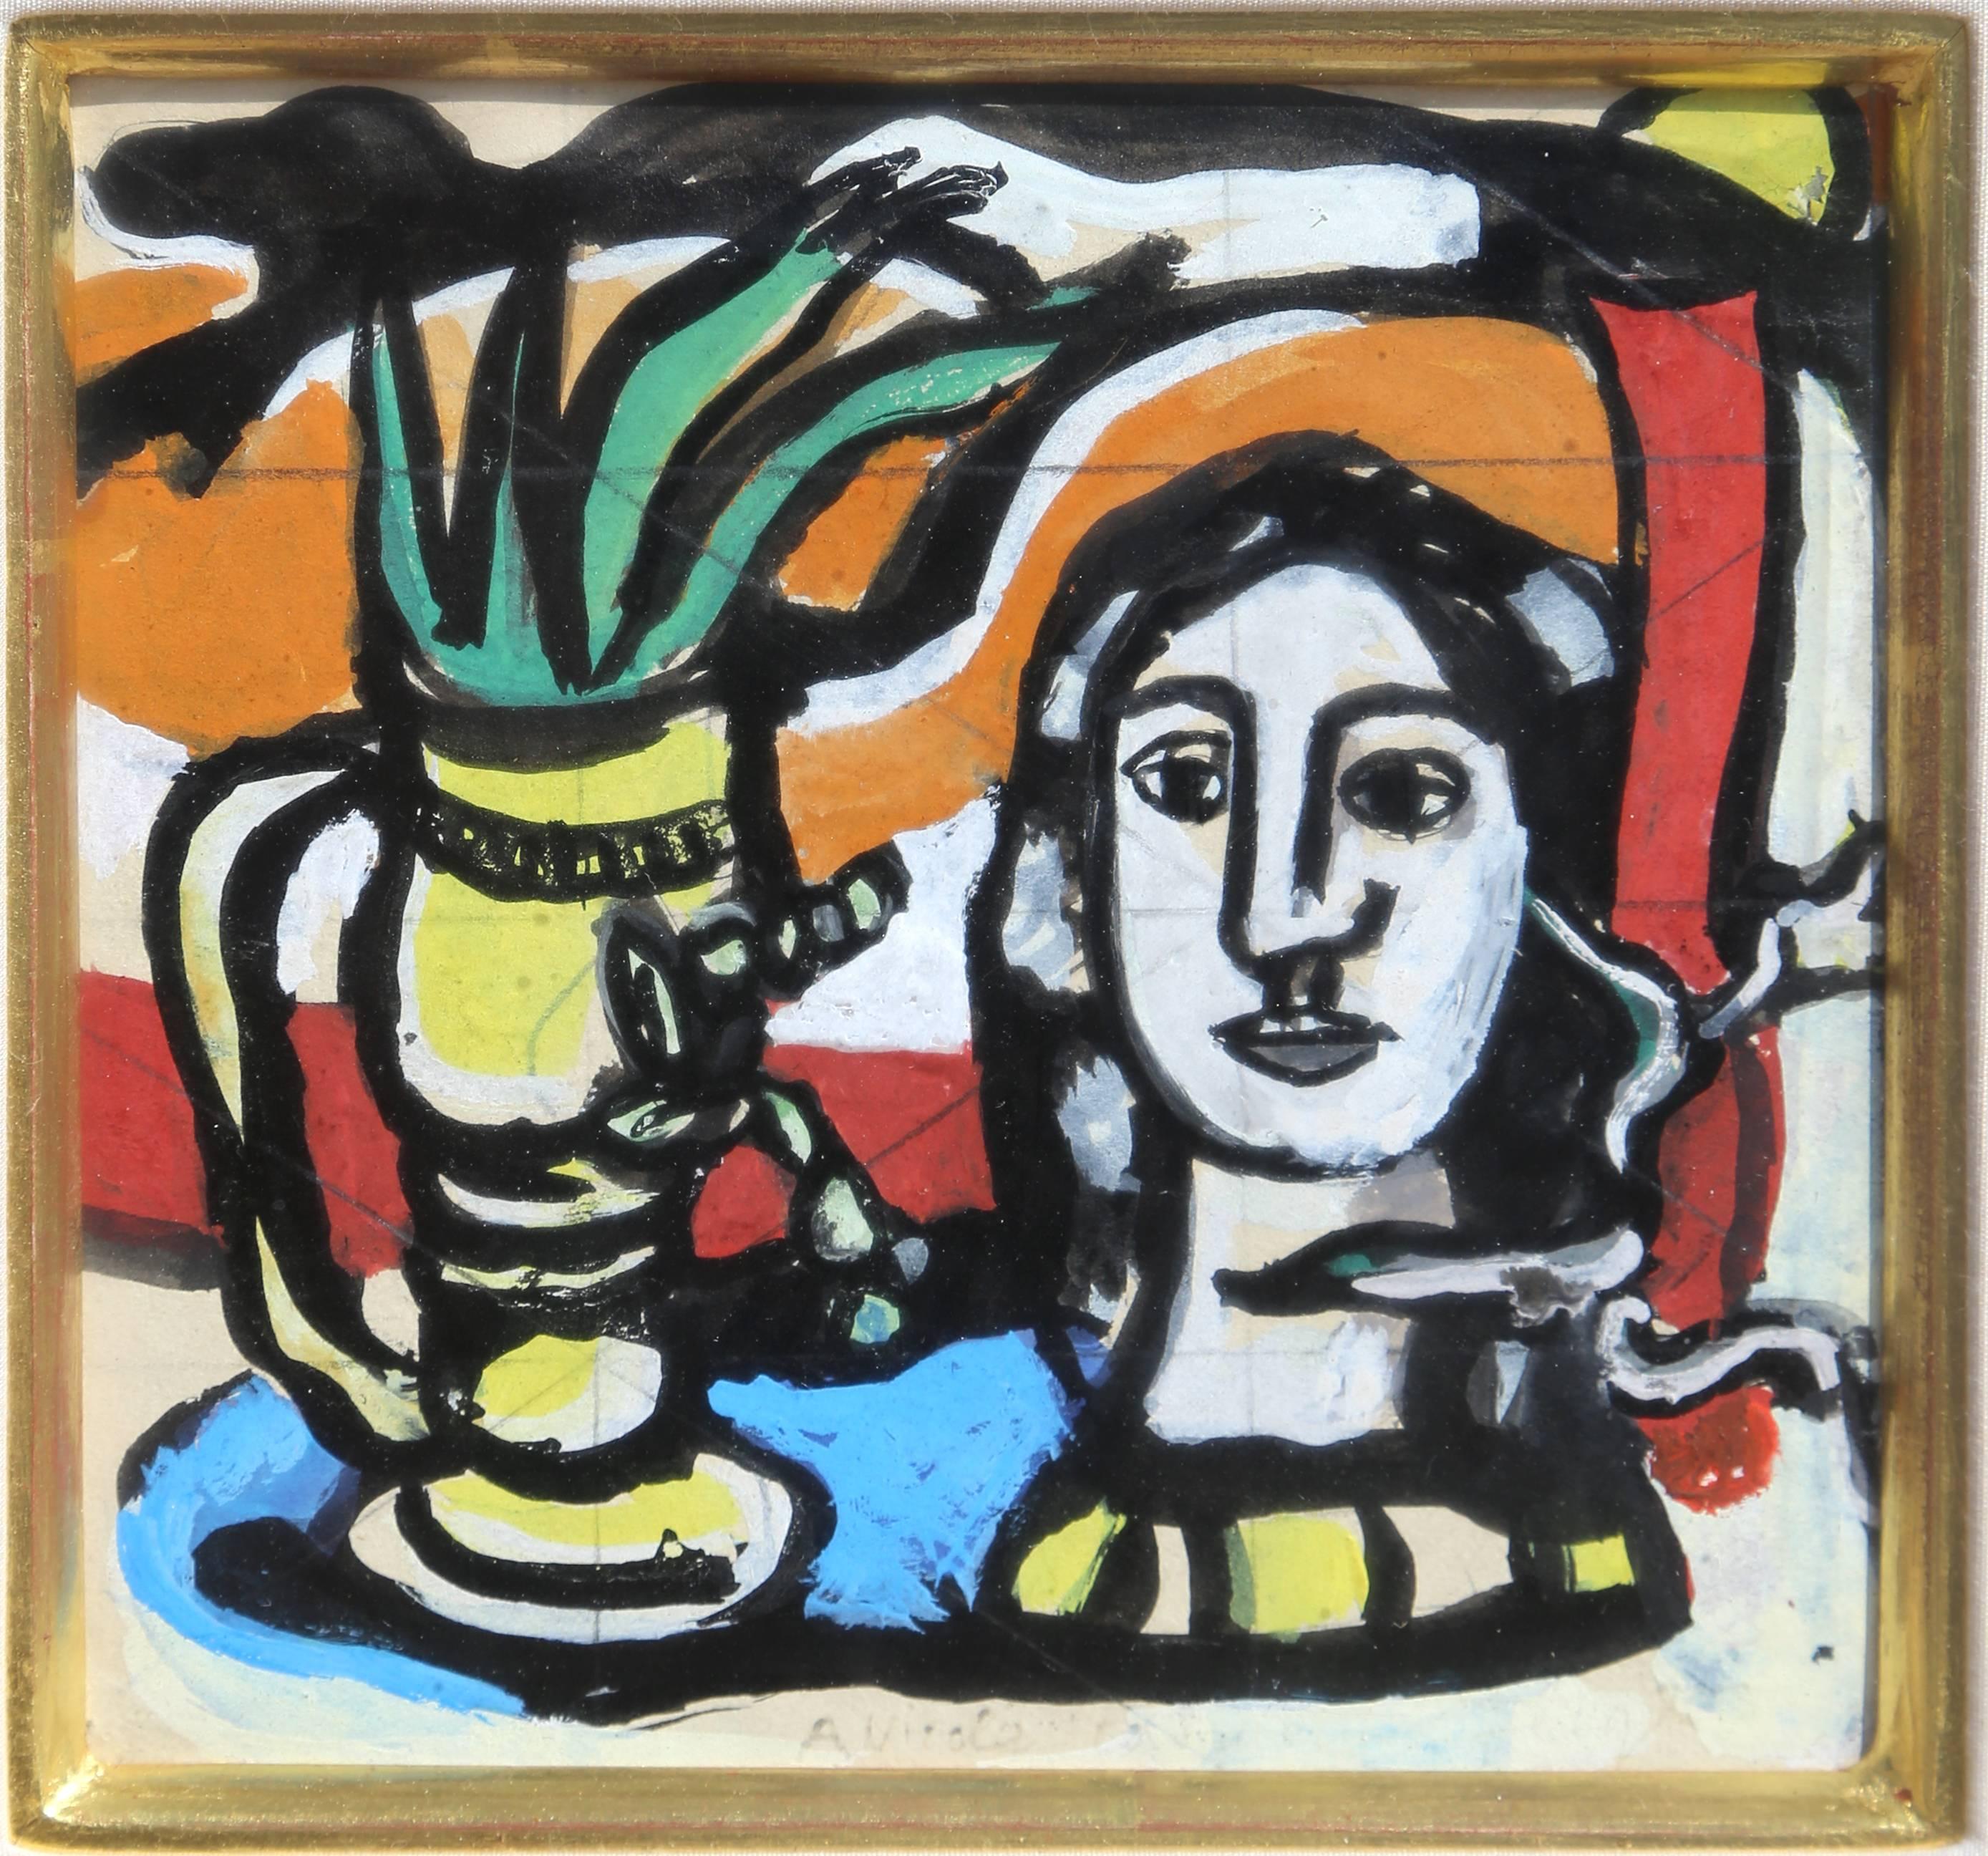 Artiste : Fernand Leger, français (1881 - 1955)
Titre : Statuette au Vase Jaune
Année : vers 1949
Médium : Gouache sur papier, dédicacé (une Nicole) à droite.
Taille : 5 x 5 in. (12,7 x 12,7 cm)
Taille du cadre : 17 x 17 pouces

Accompagné d'un